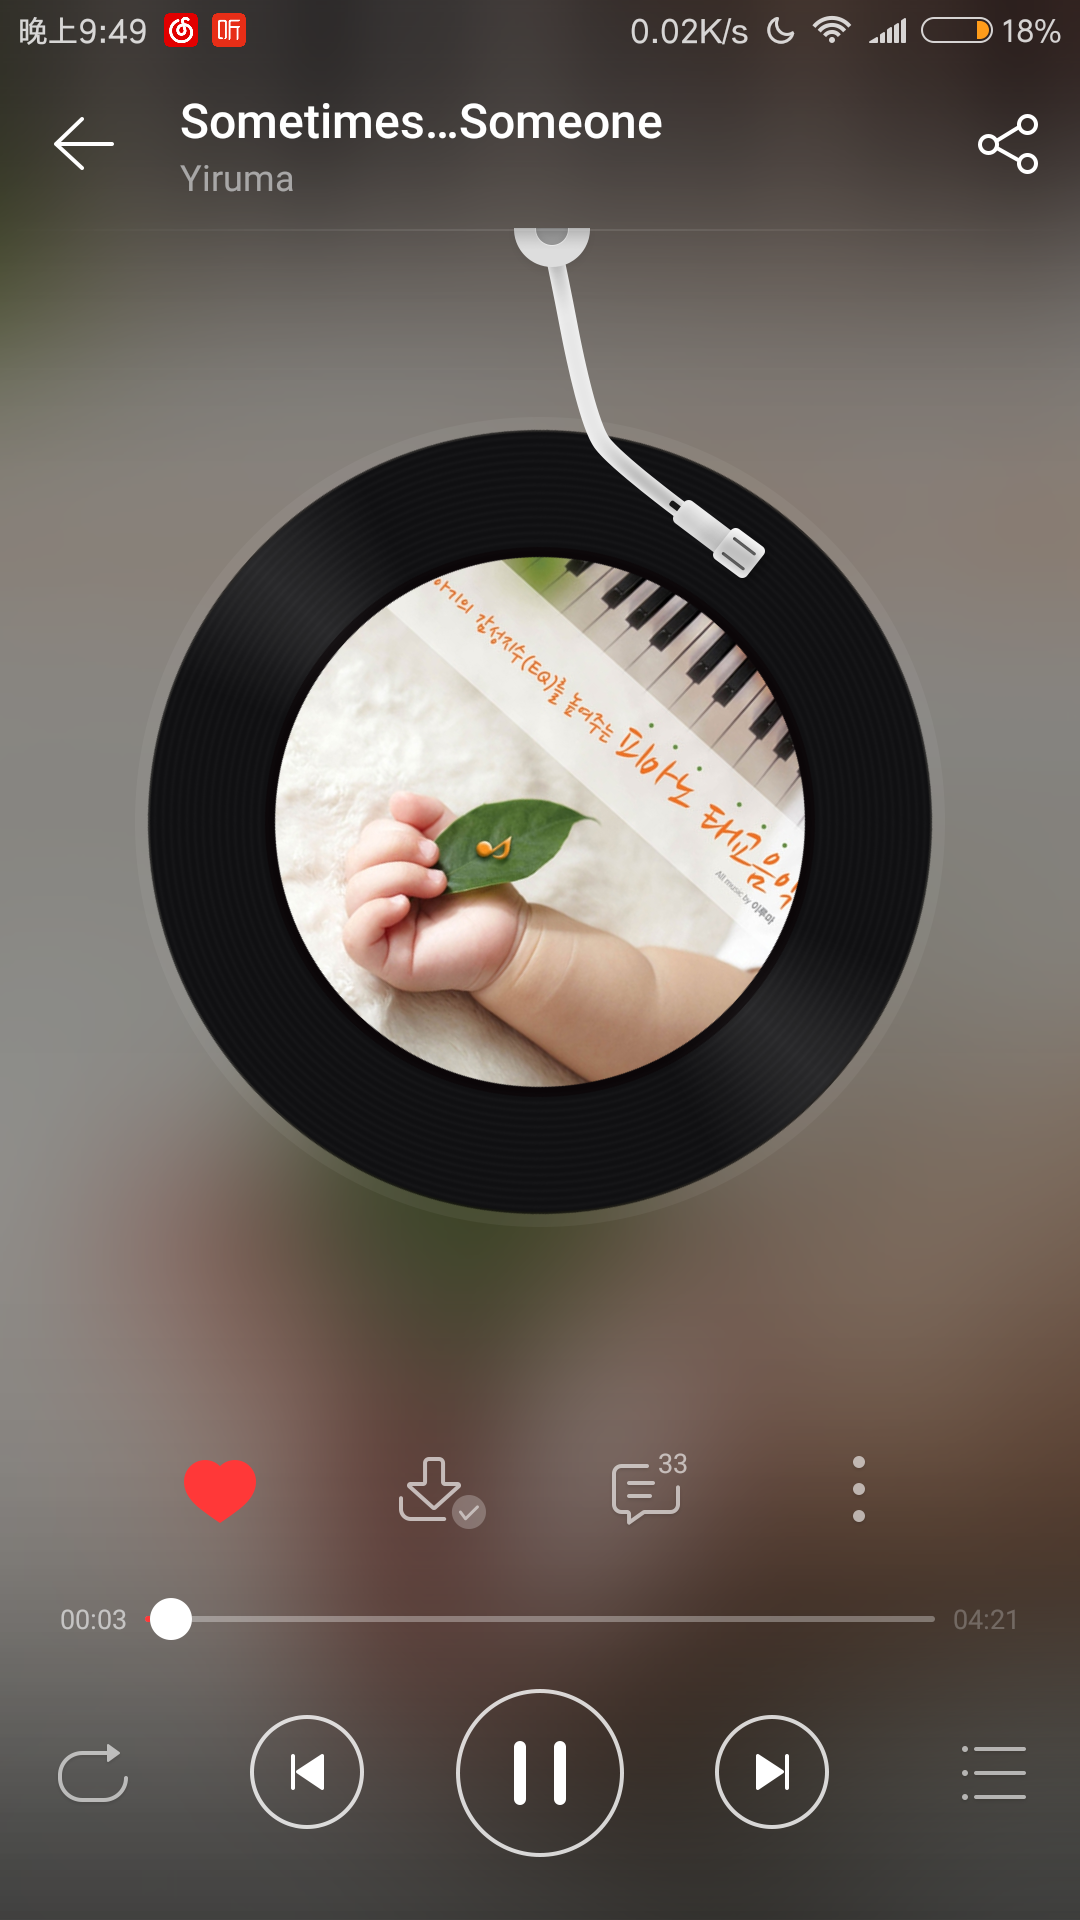 ‎15首白噪音 - 柔和的睡眠音乐, 改善睡眠, 舒压放松深度催眠纯音乐 - Album by 白噪音 - Apple Music